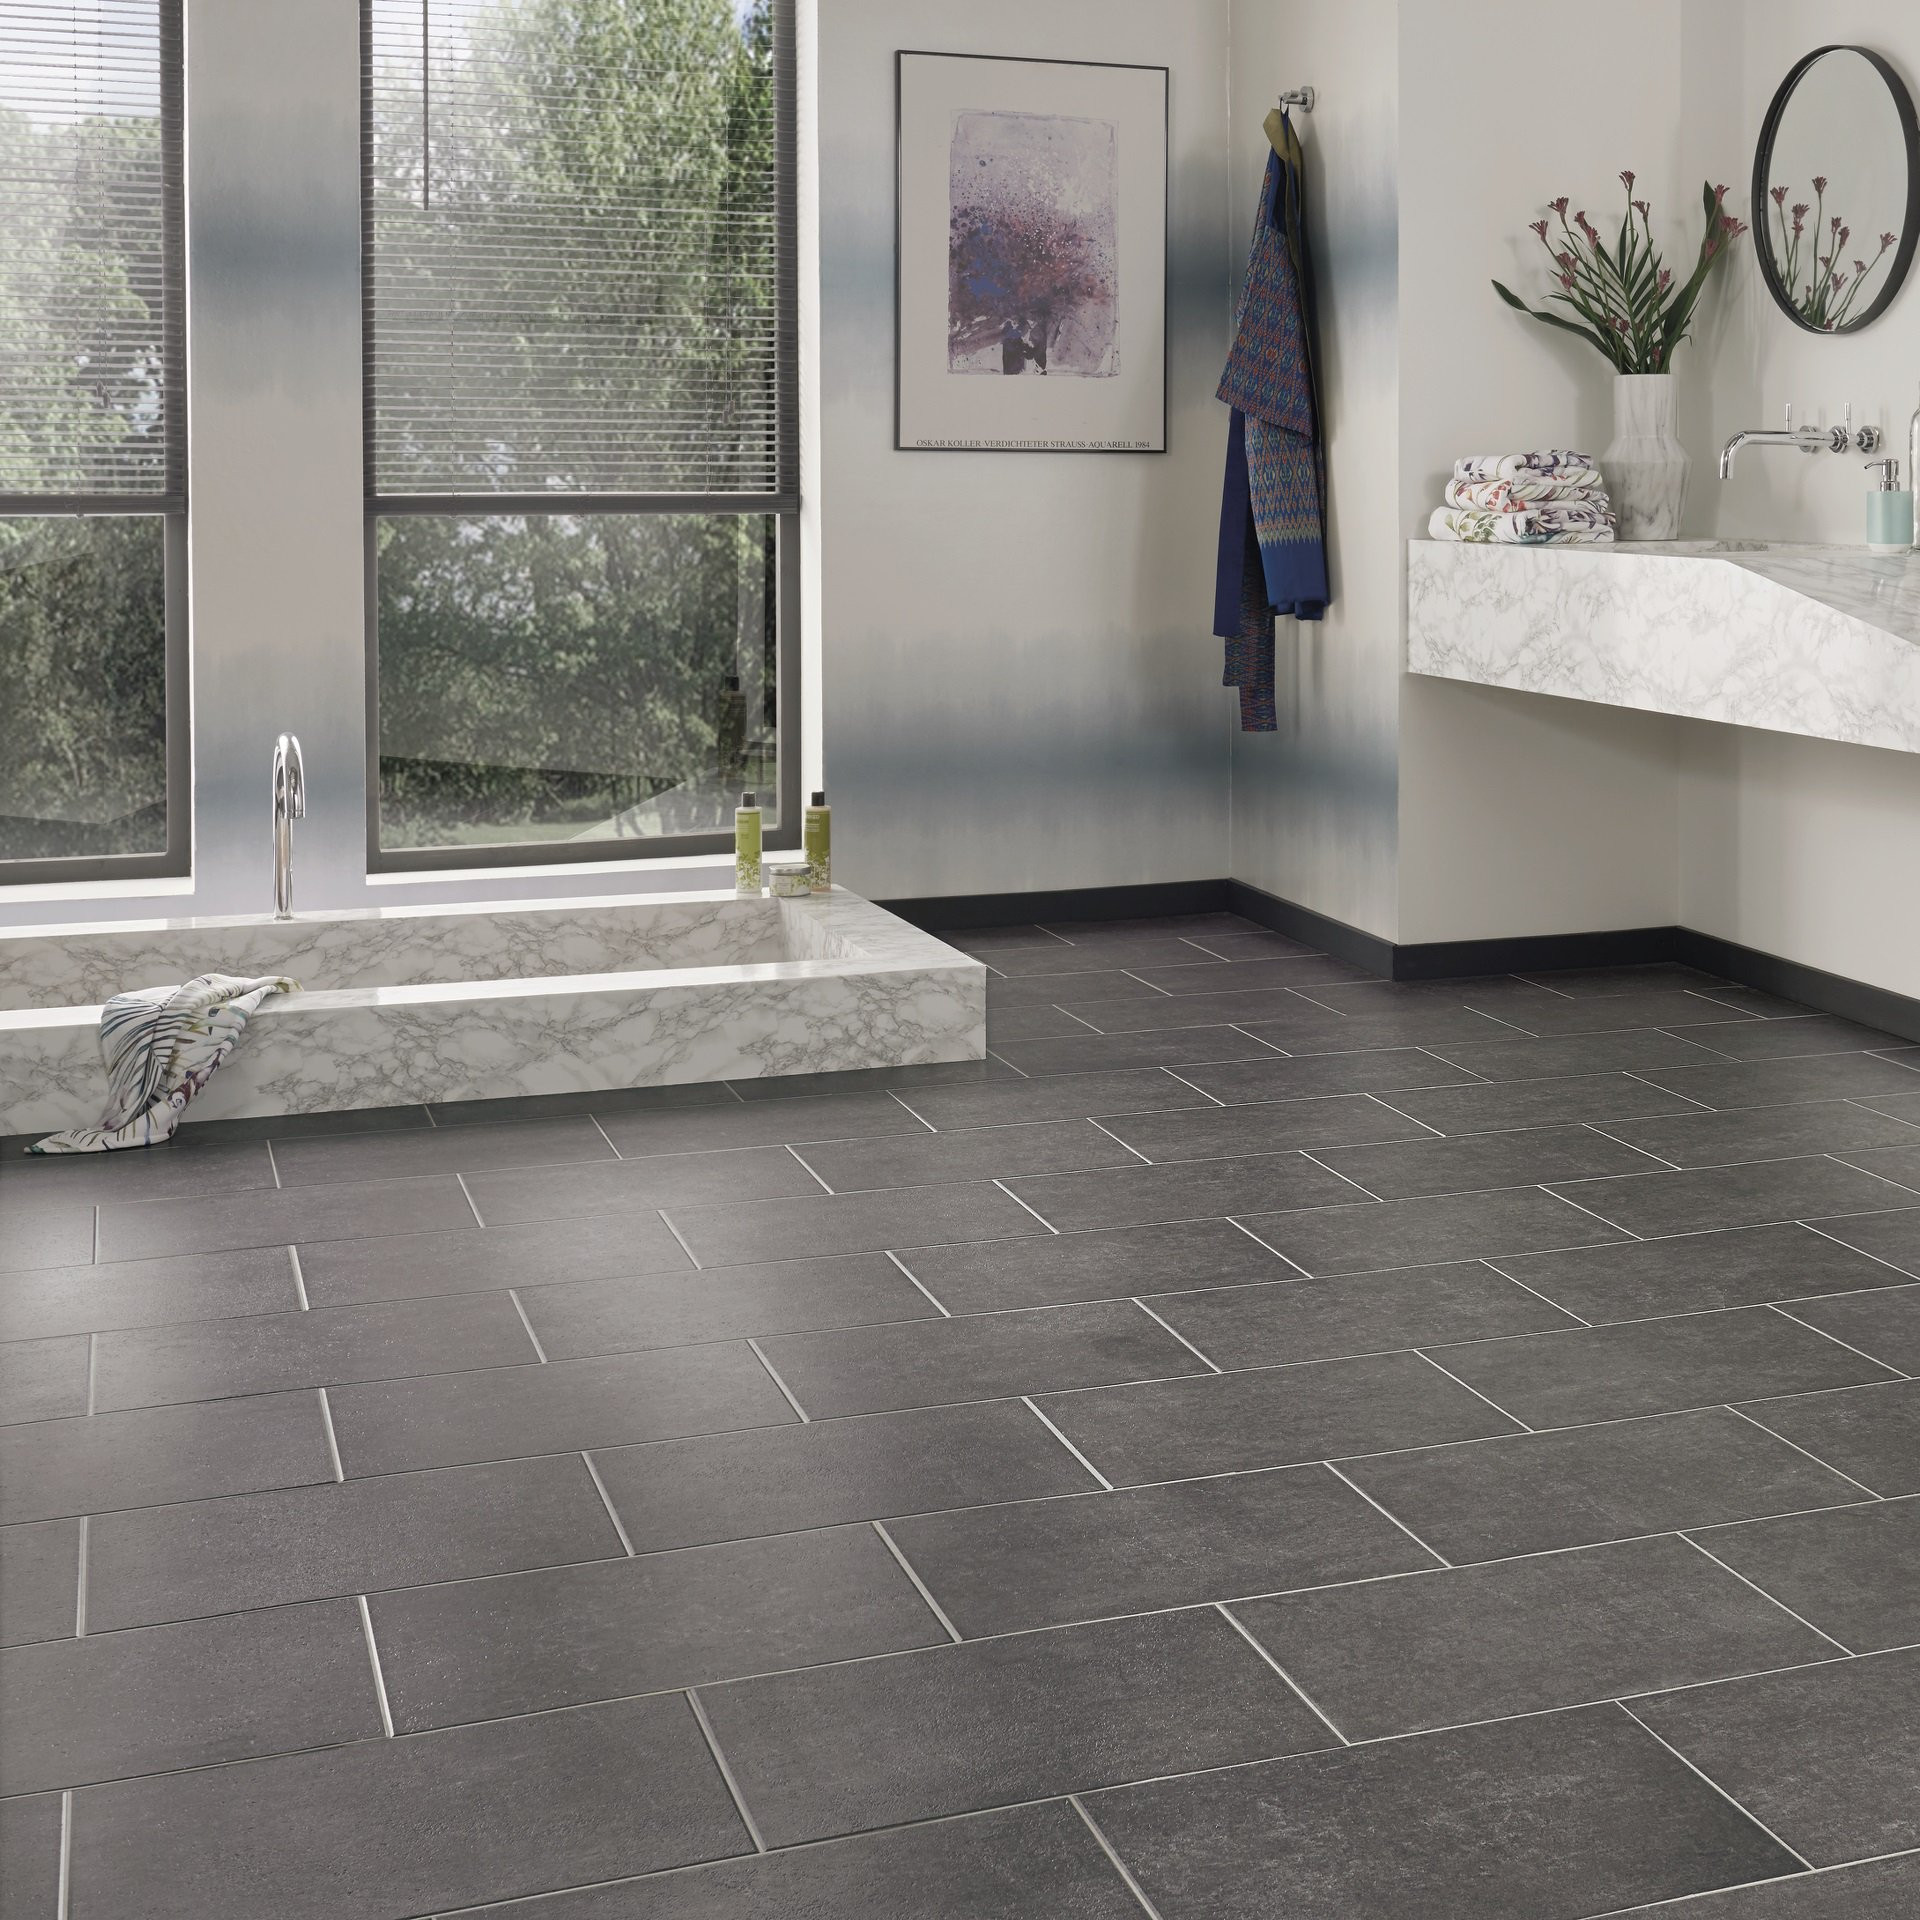 Tile Floors For Bathrooms
 Bathroom Flooring Ideas